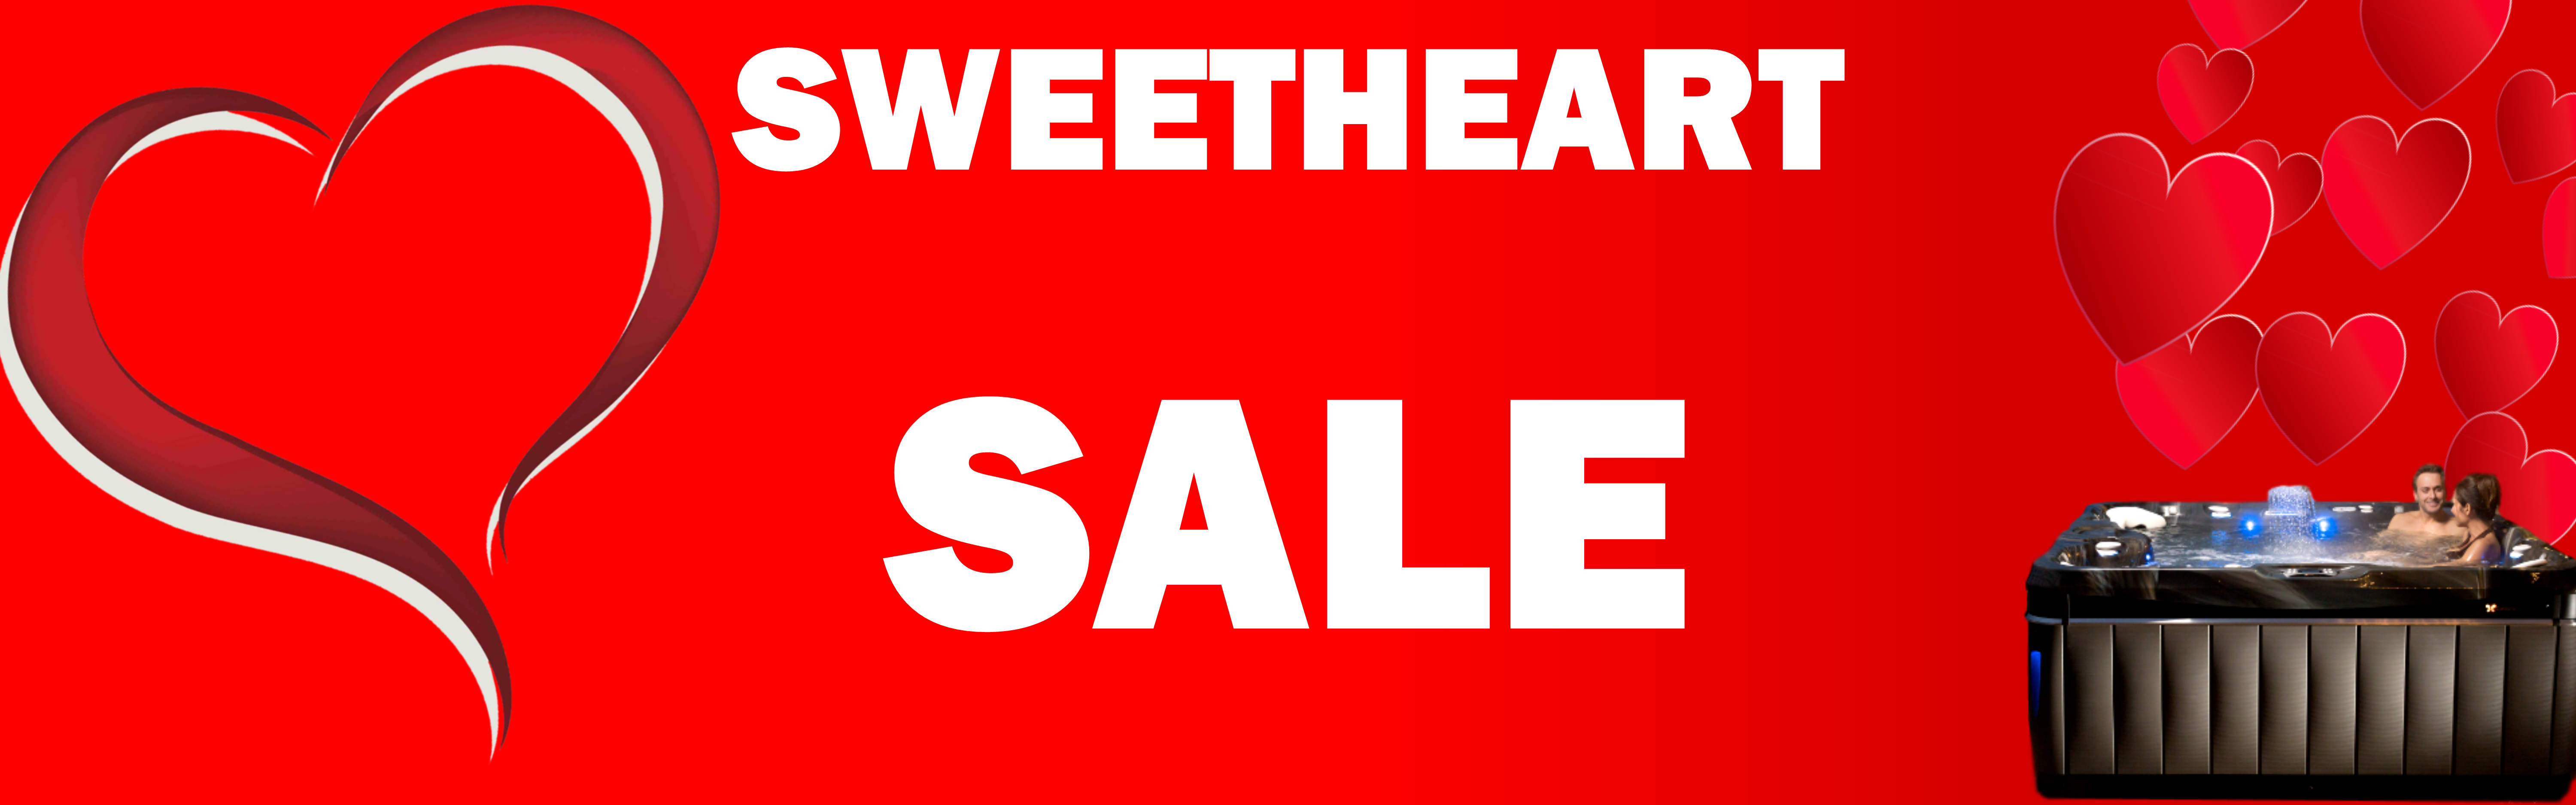 Sweetheart Sale